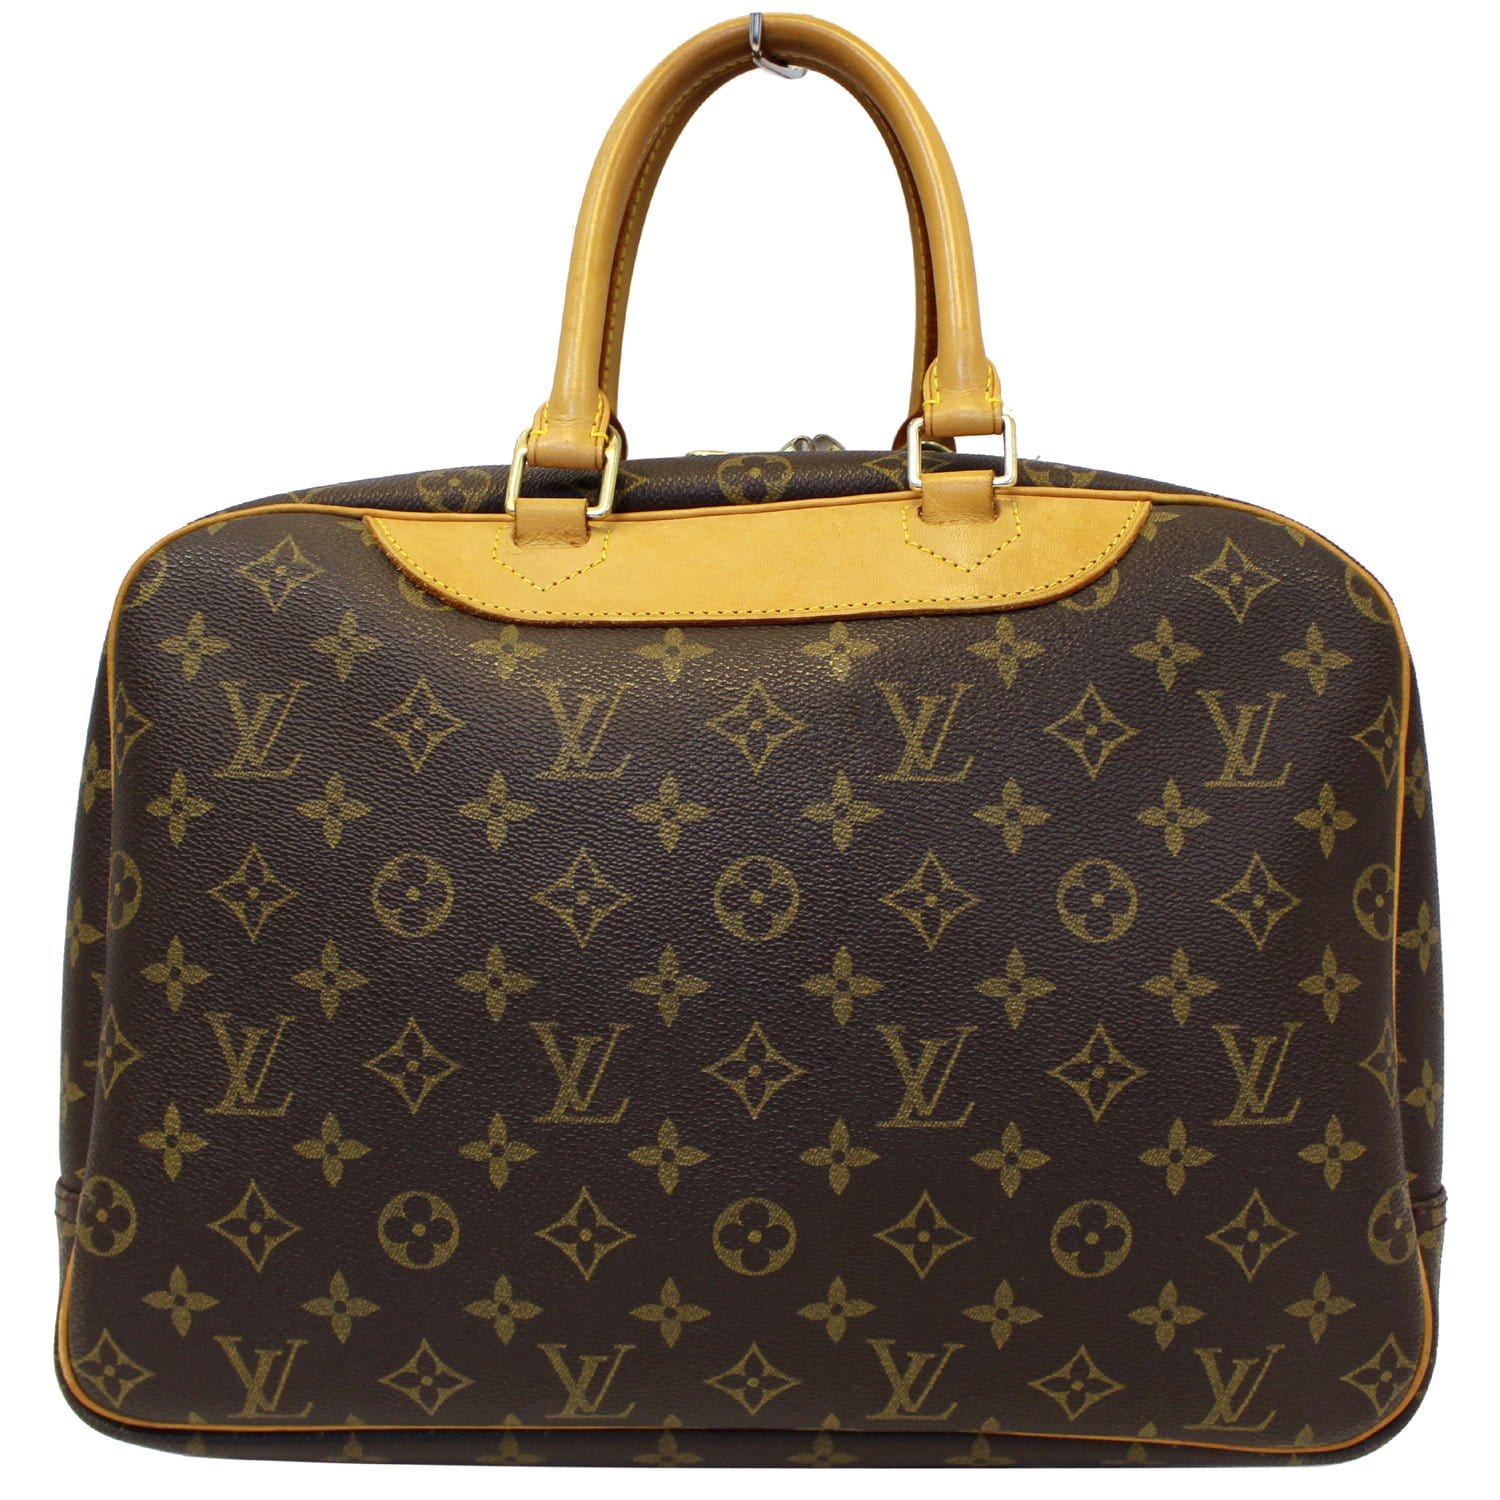 Louis Vuitton LOUIS VUITTON handbag monogram Deauville canvas